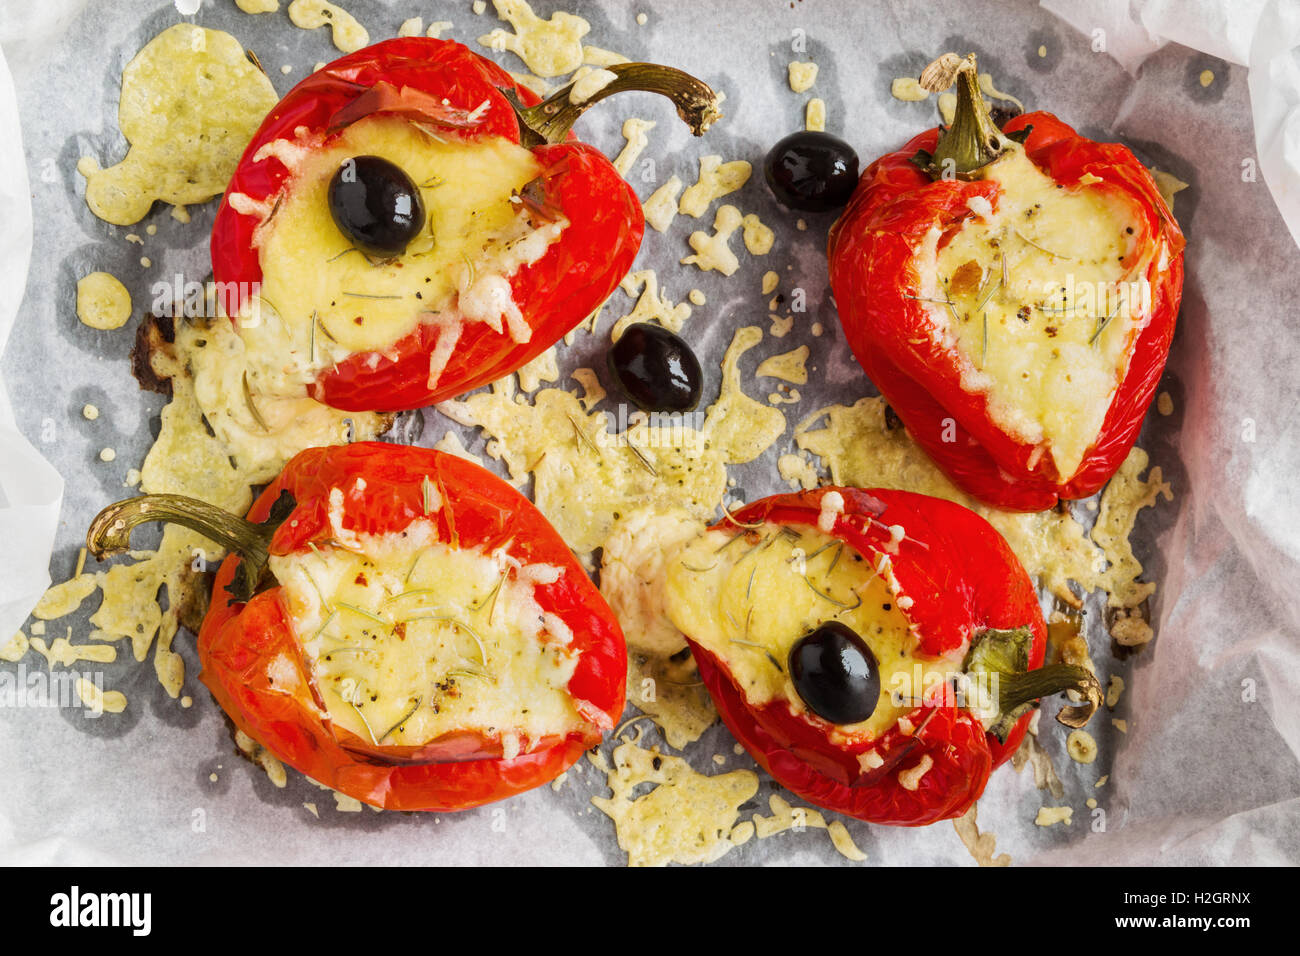 Gefüllte rote Paprika mit Feta-Käse und schwarzen Oliven auf Backblech legen, Ansicht von oben. Stockfoto